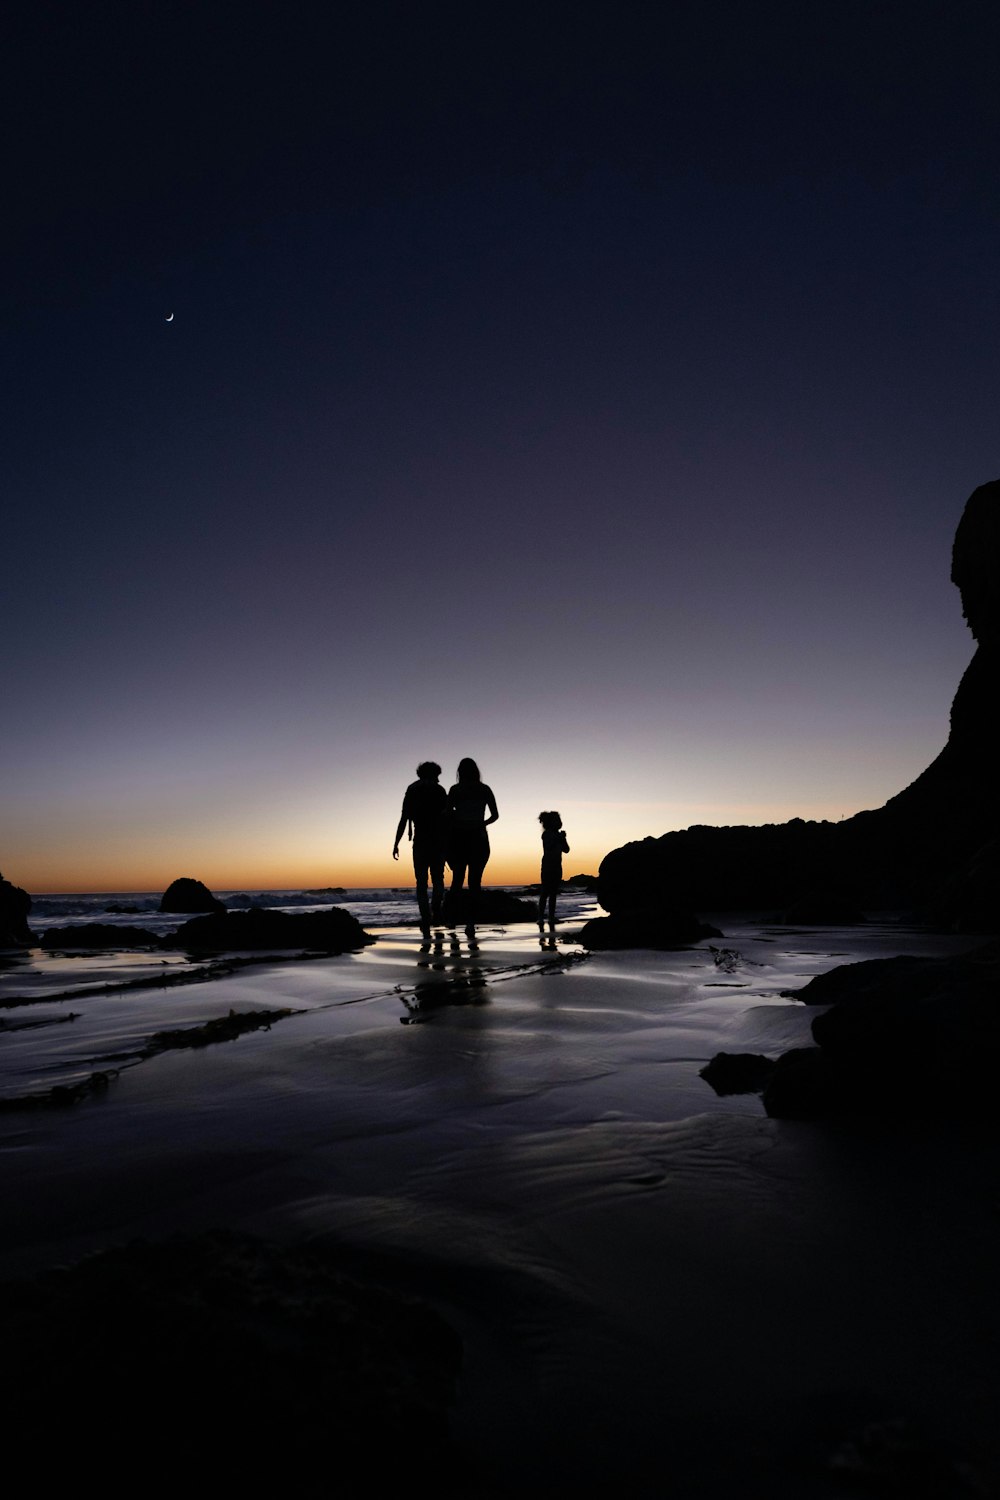 日没時にビーチに立つ2人のシルエット